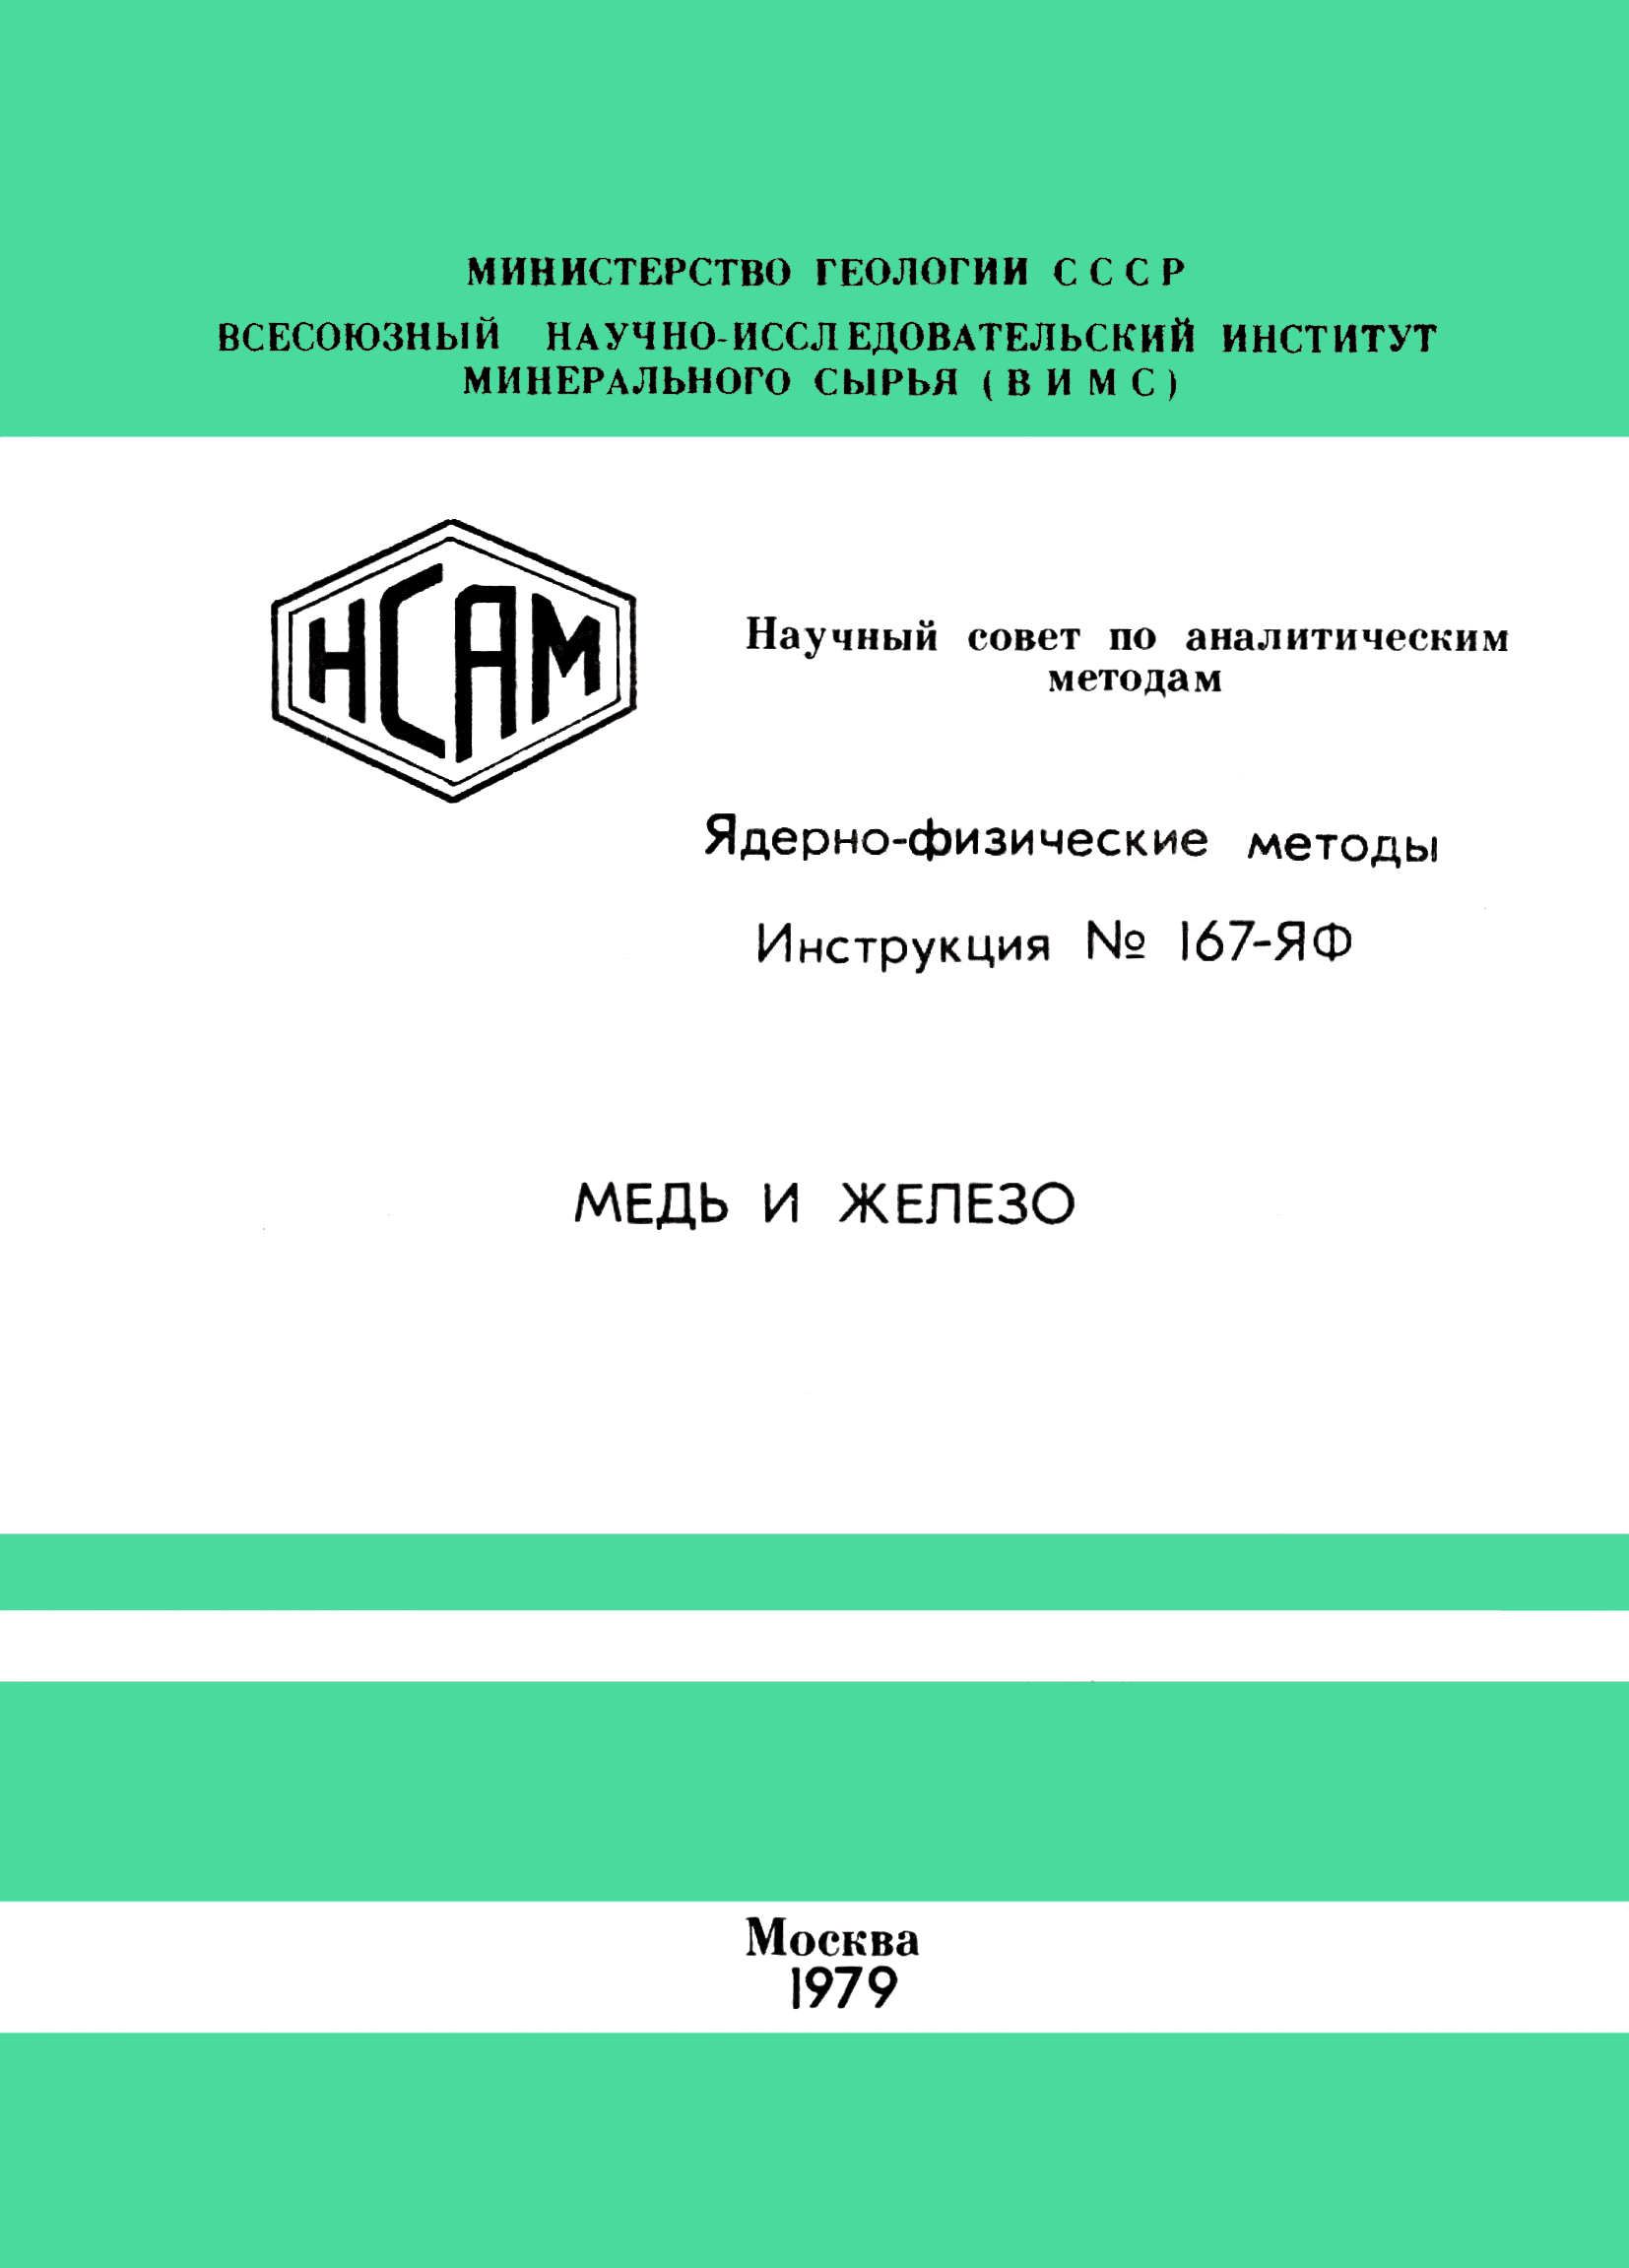 Инструкция НСАМ 167-ЯФ